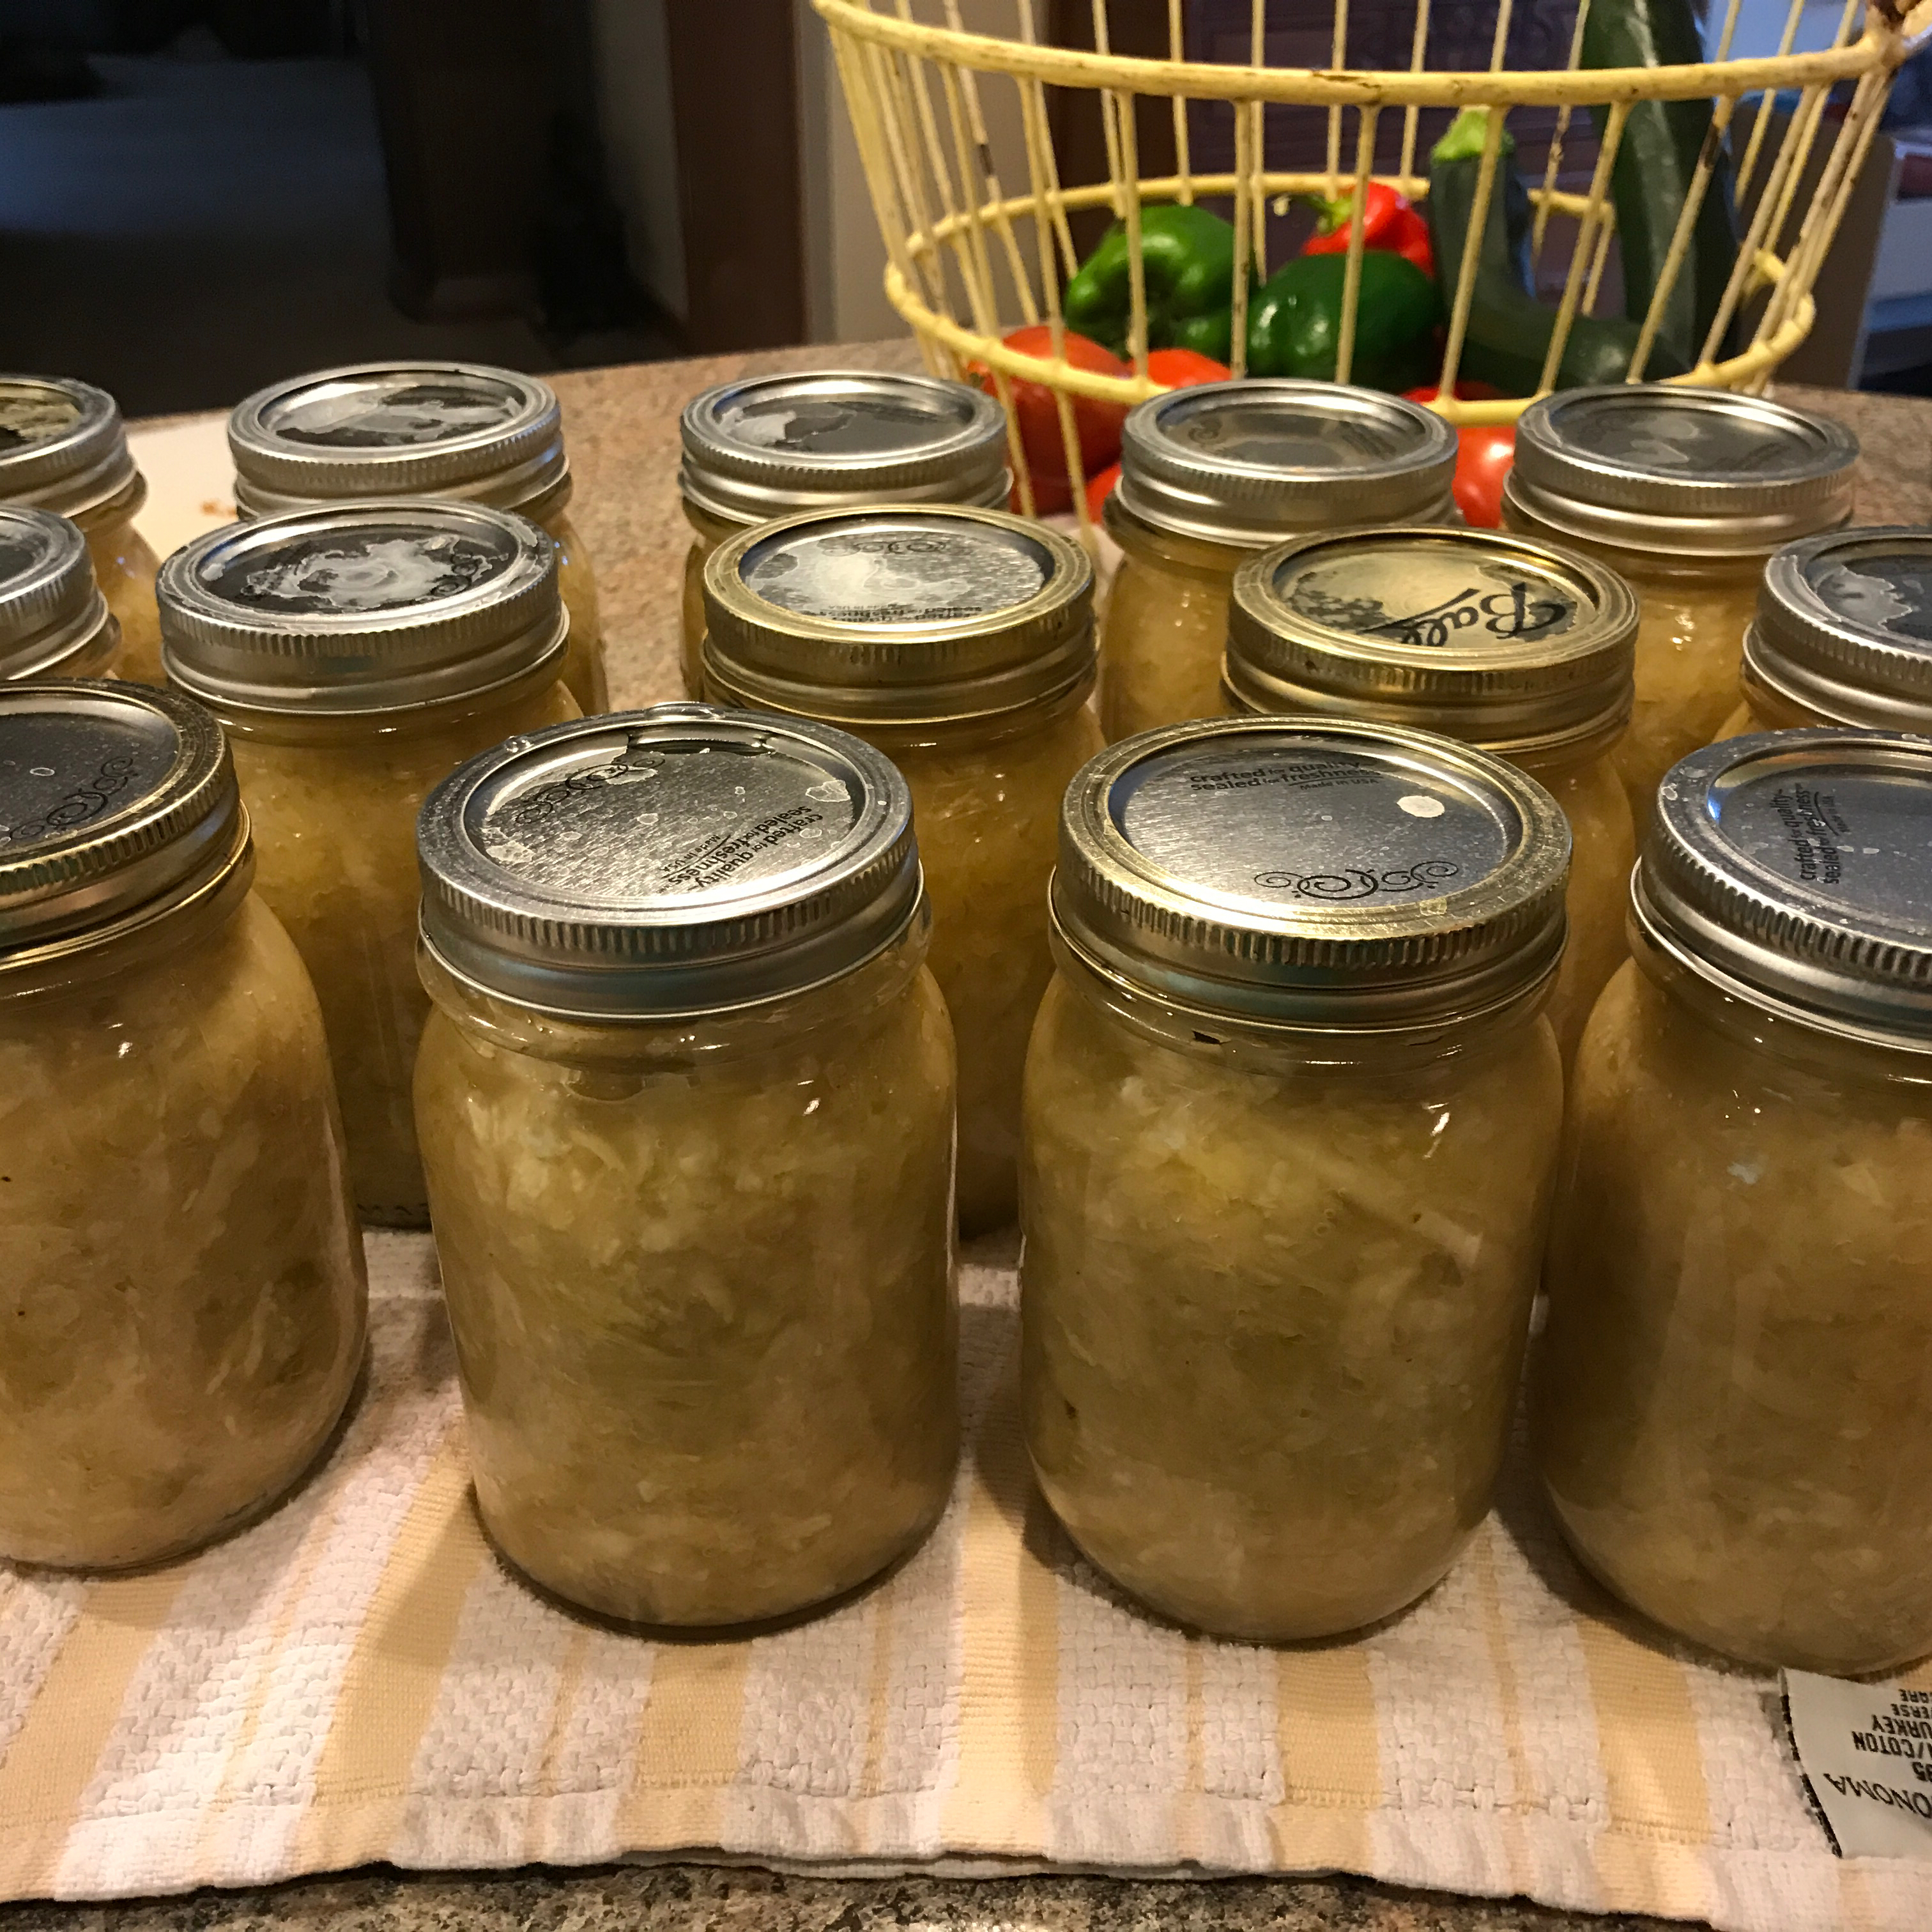 Sauerkraut for Canning